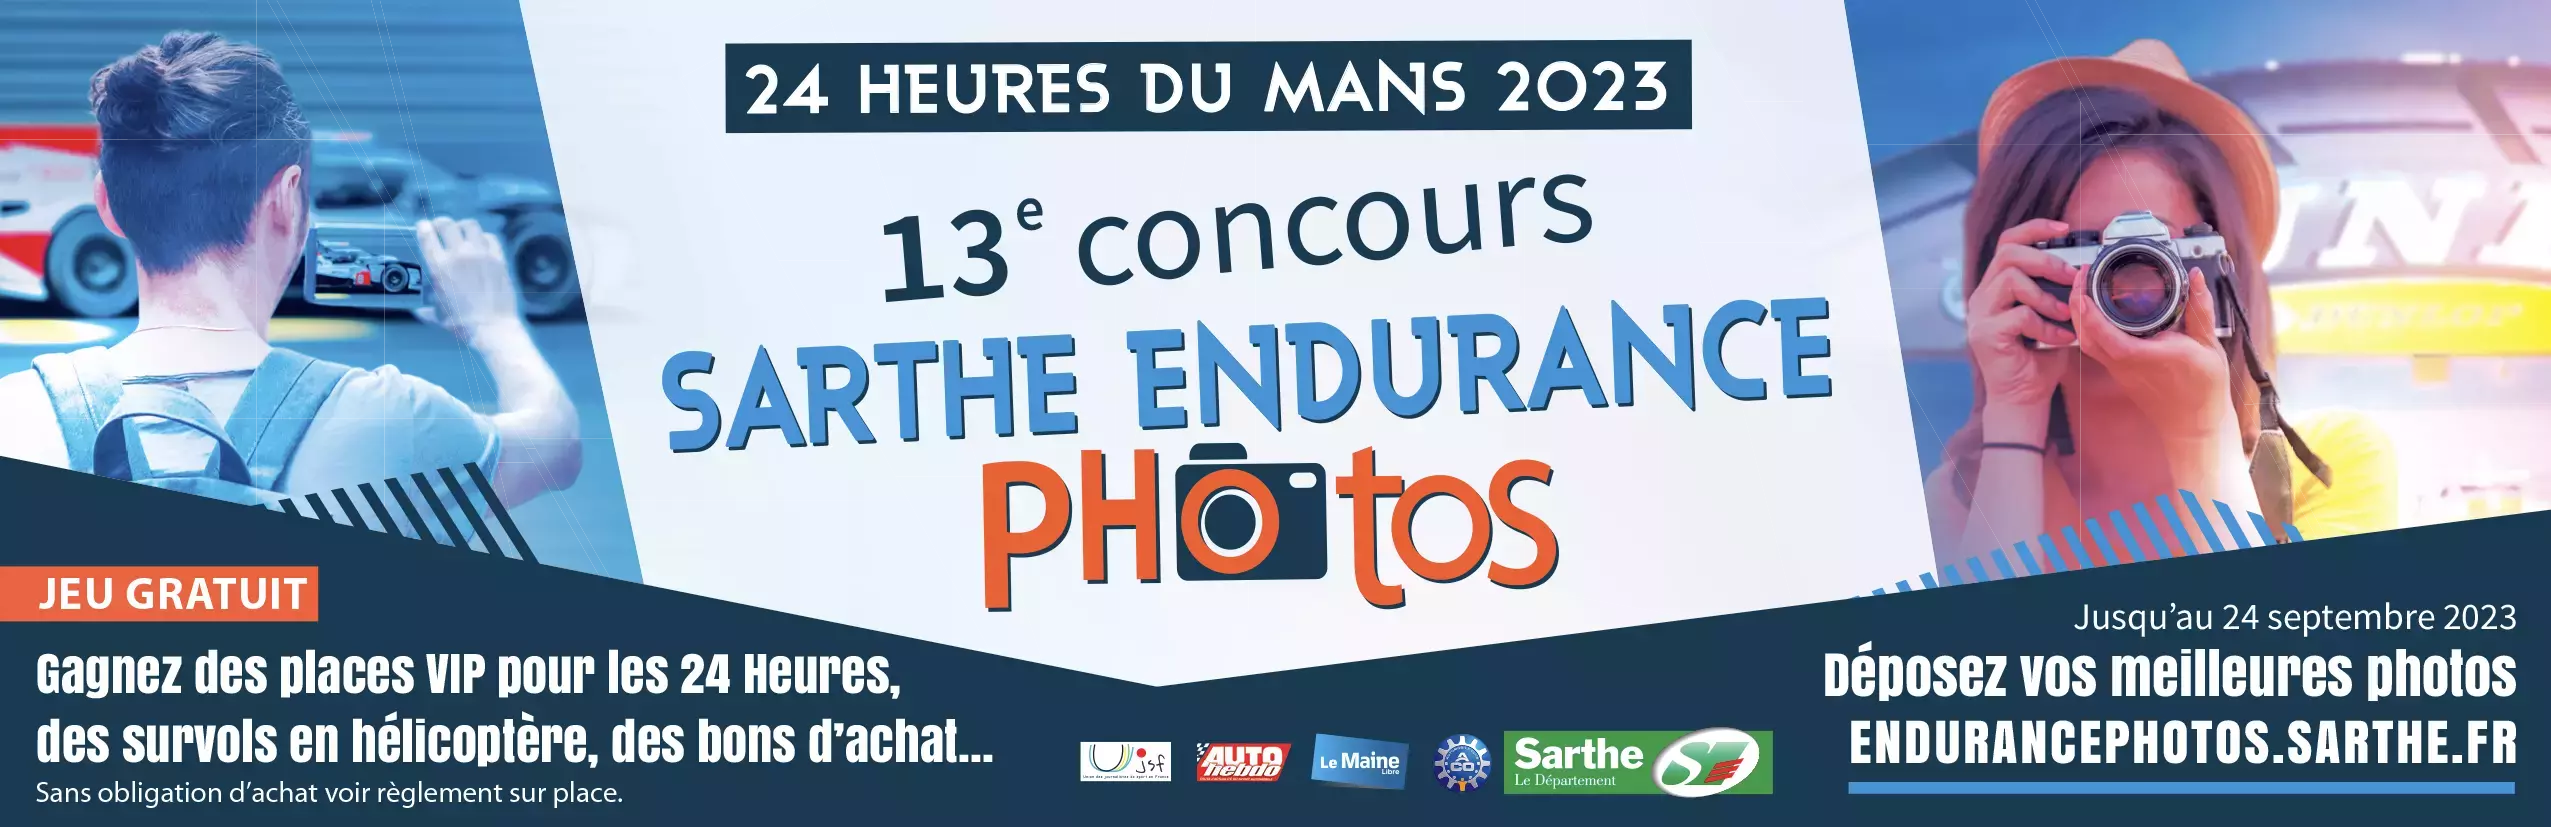 Concours sarthe-endurance-photos-2023